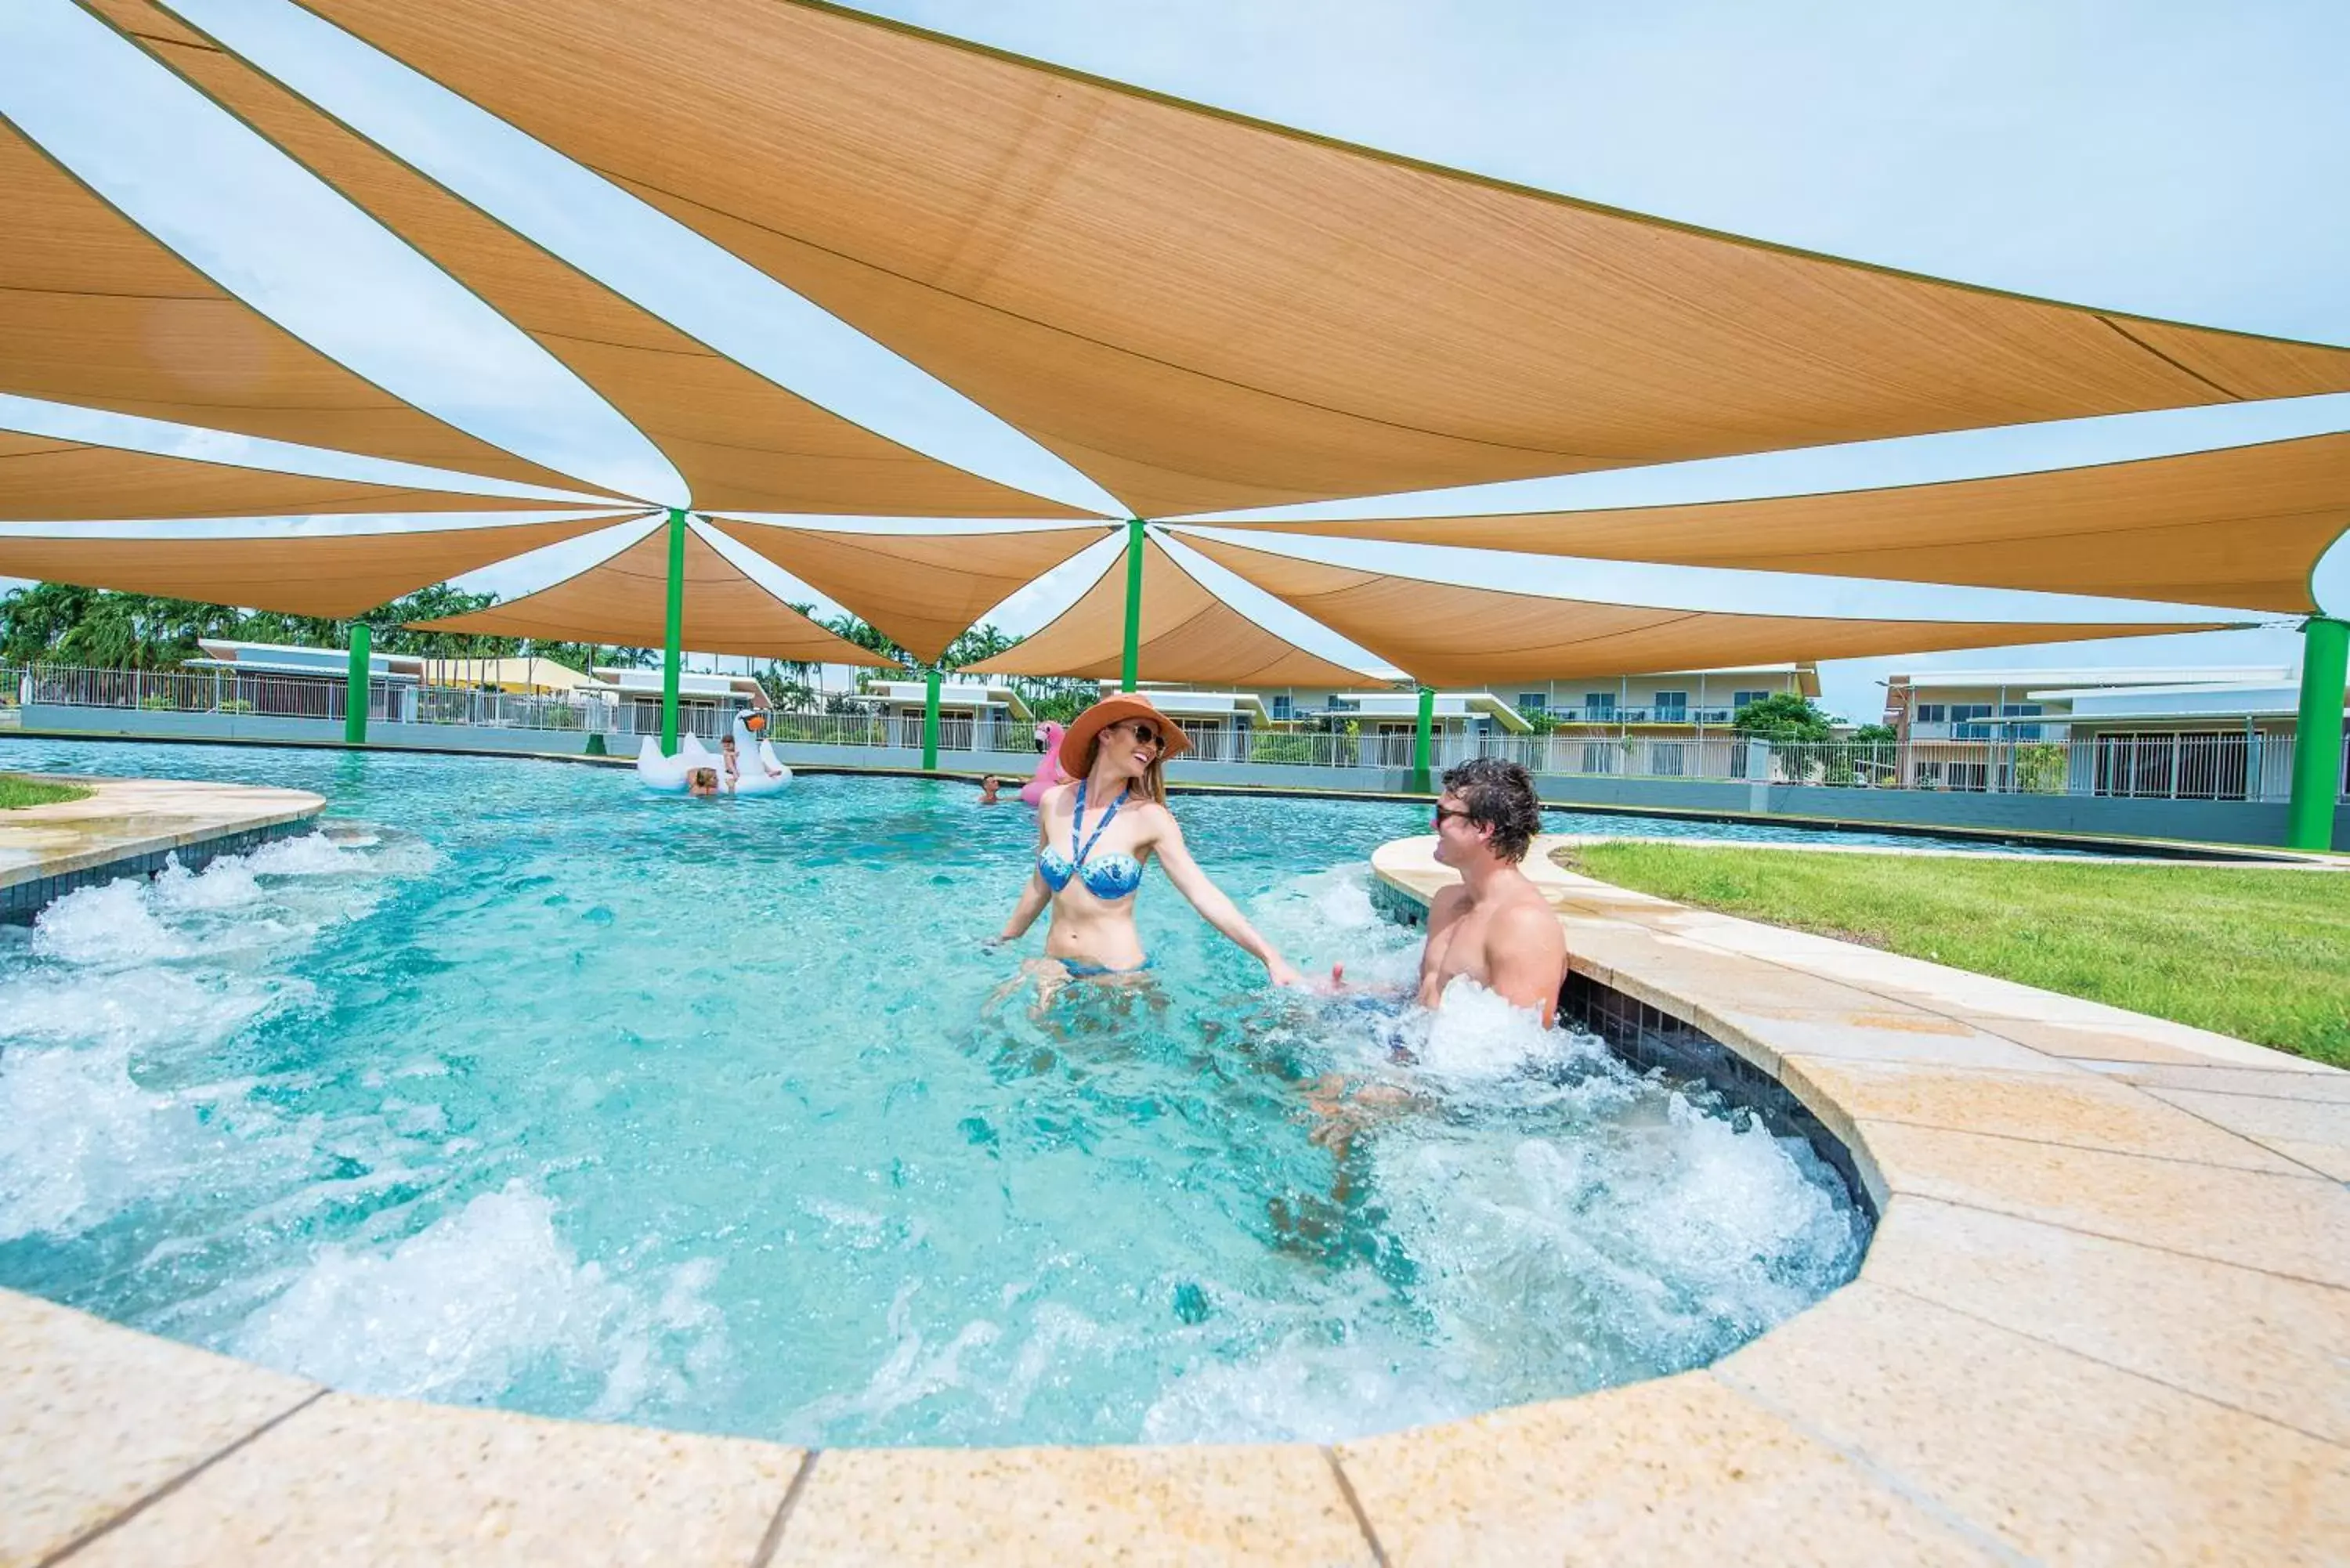 Swimming Pool in Club Tropical Resort Darwin